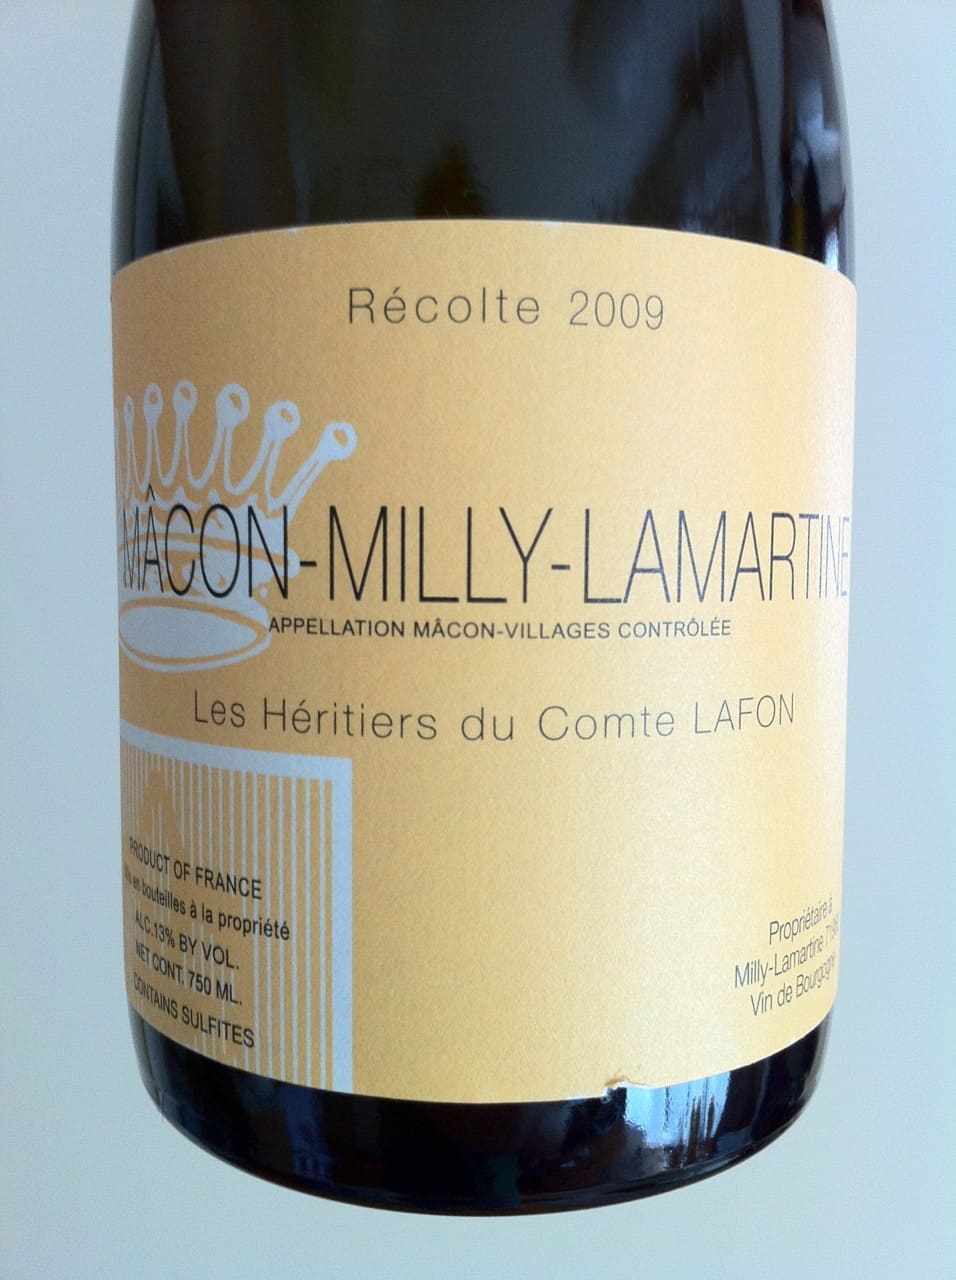 Les Héritiers du Comte Lafon Mâcon-Milly-Lamartine